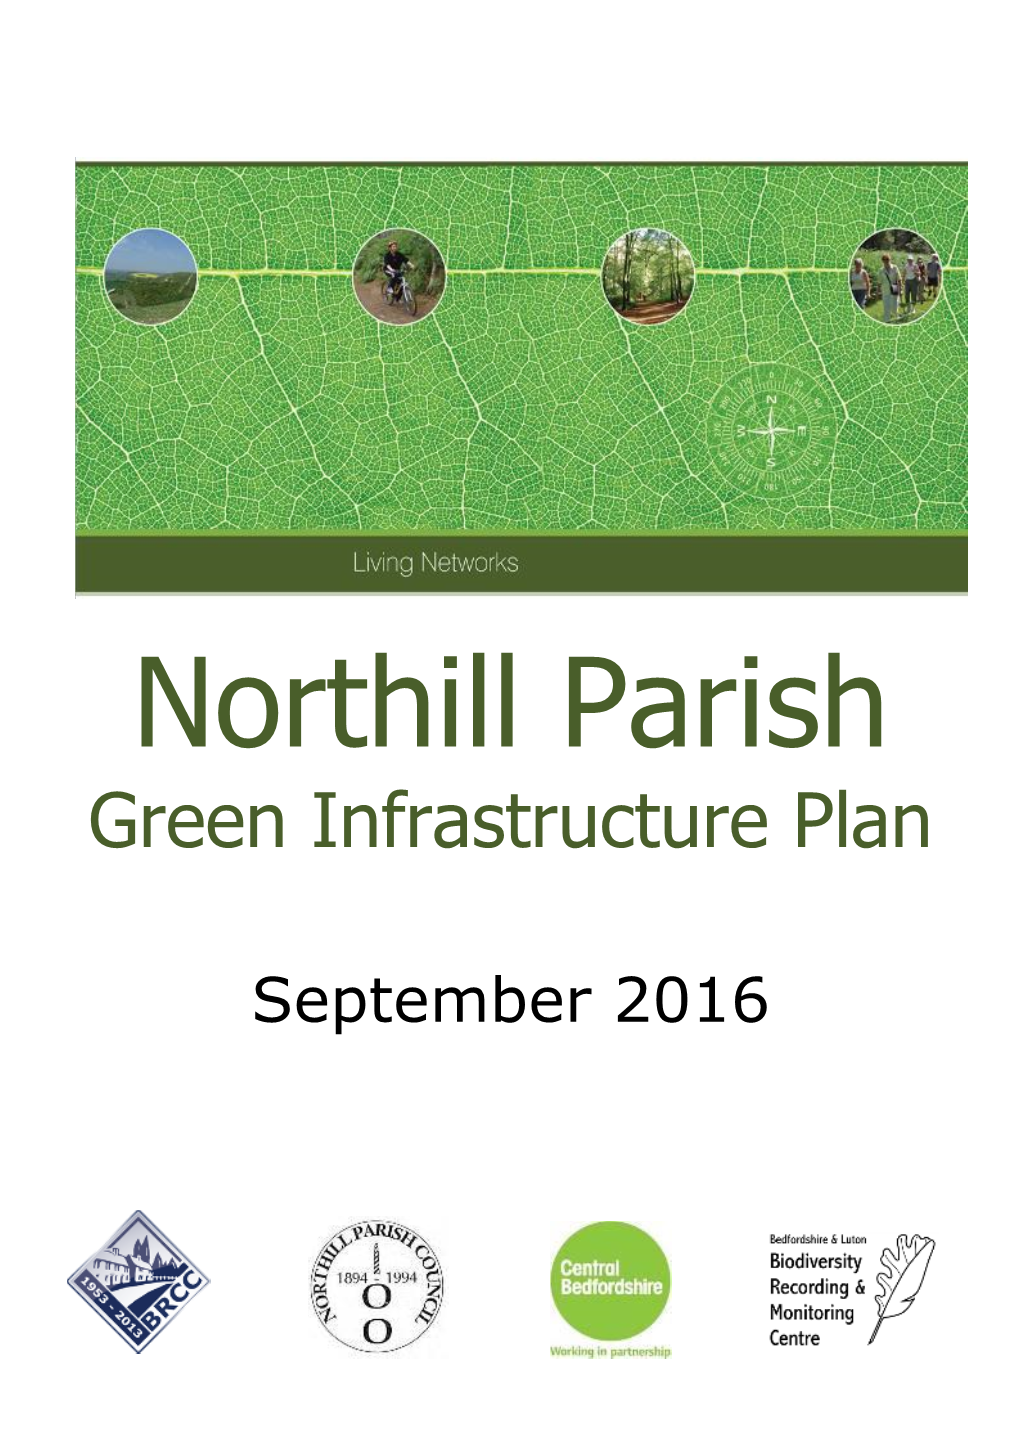 Biggleswade's Green Infrastructure Plan